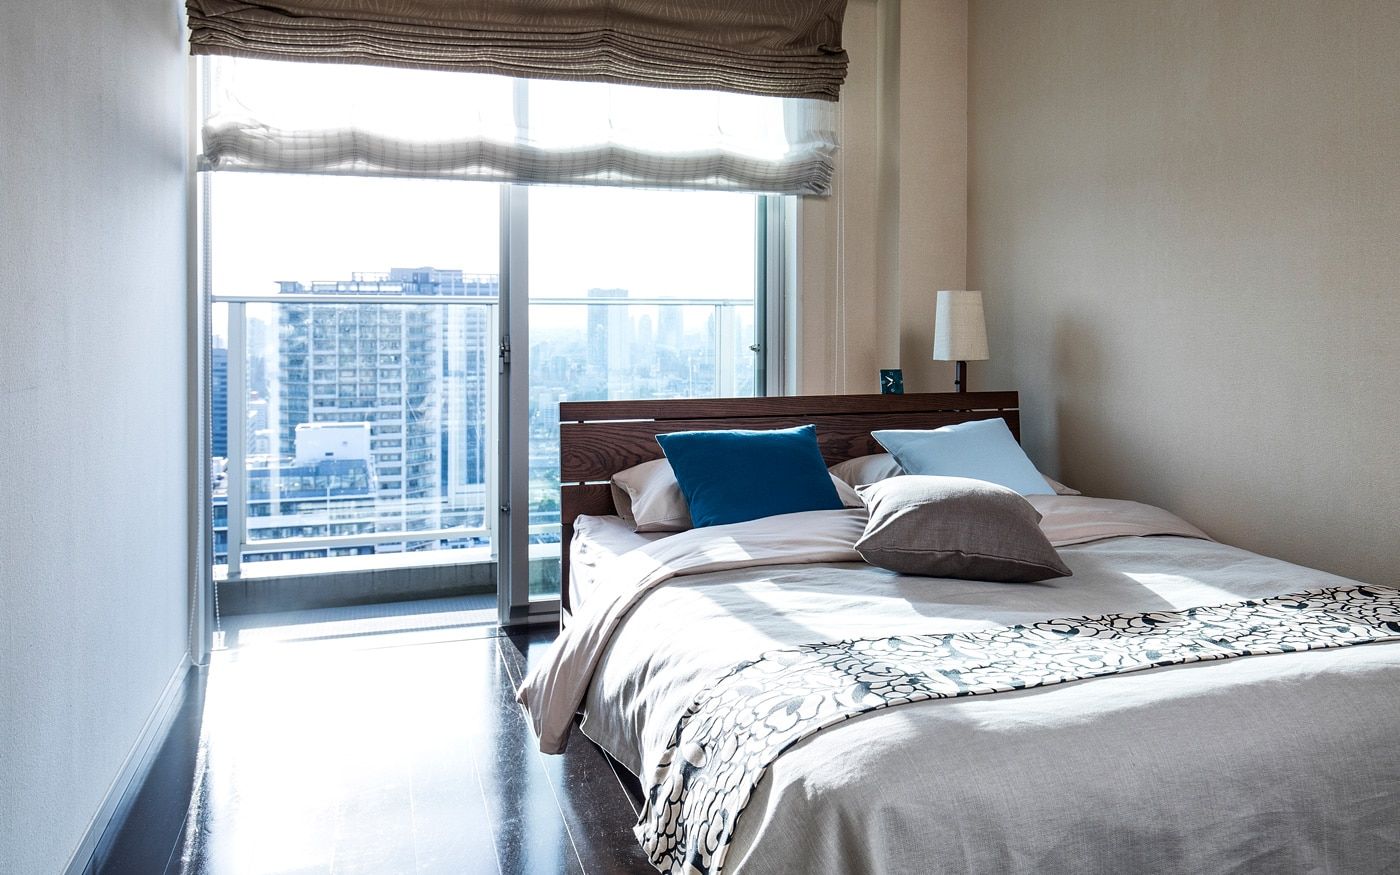 モダンで都会的なグレー×ブルーがテーマの寝室例